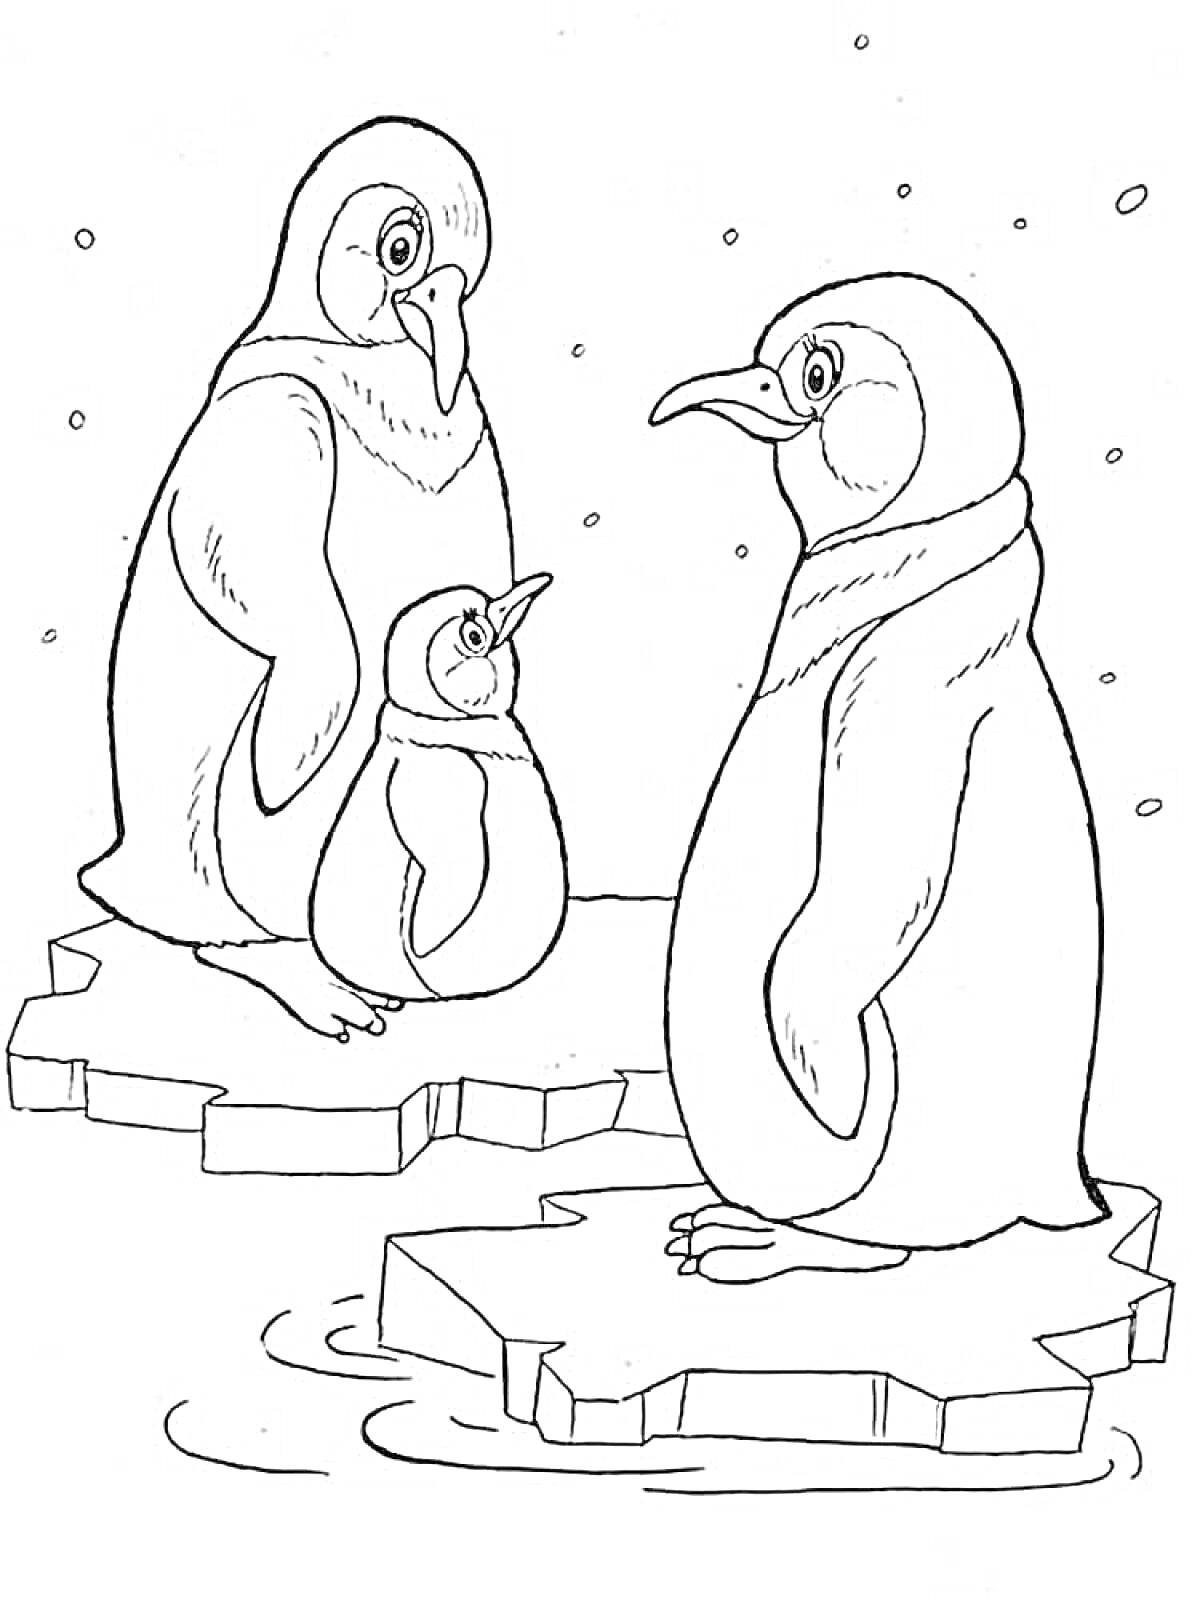 Два взрослых пингвина и один пингвинёнок на льдинах в Антарктиде, падающий снег